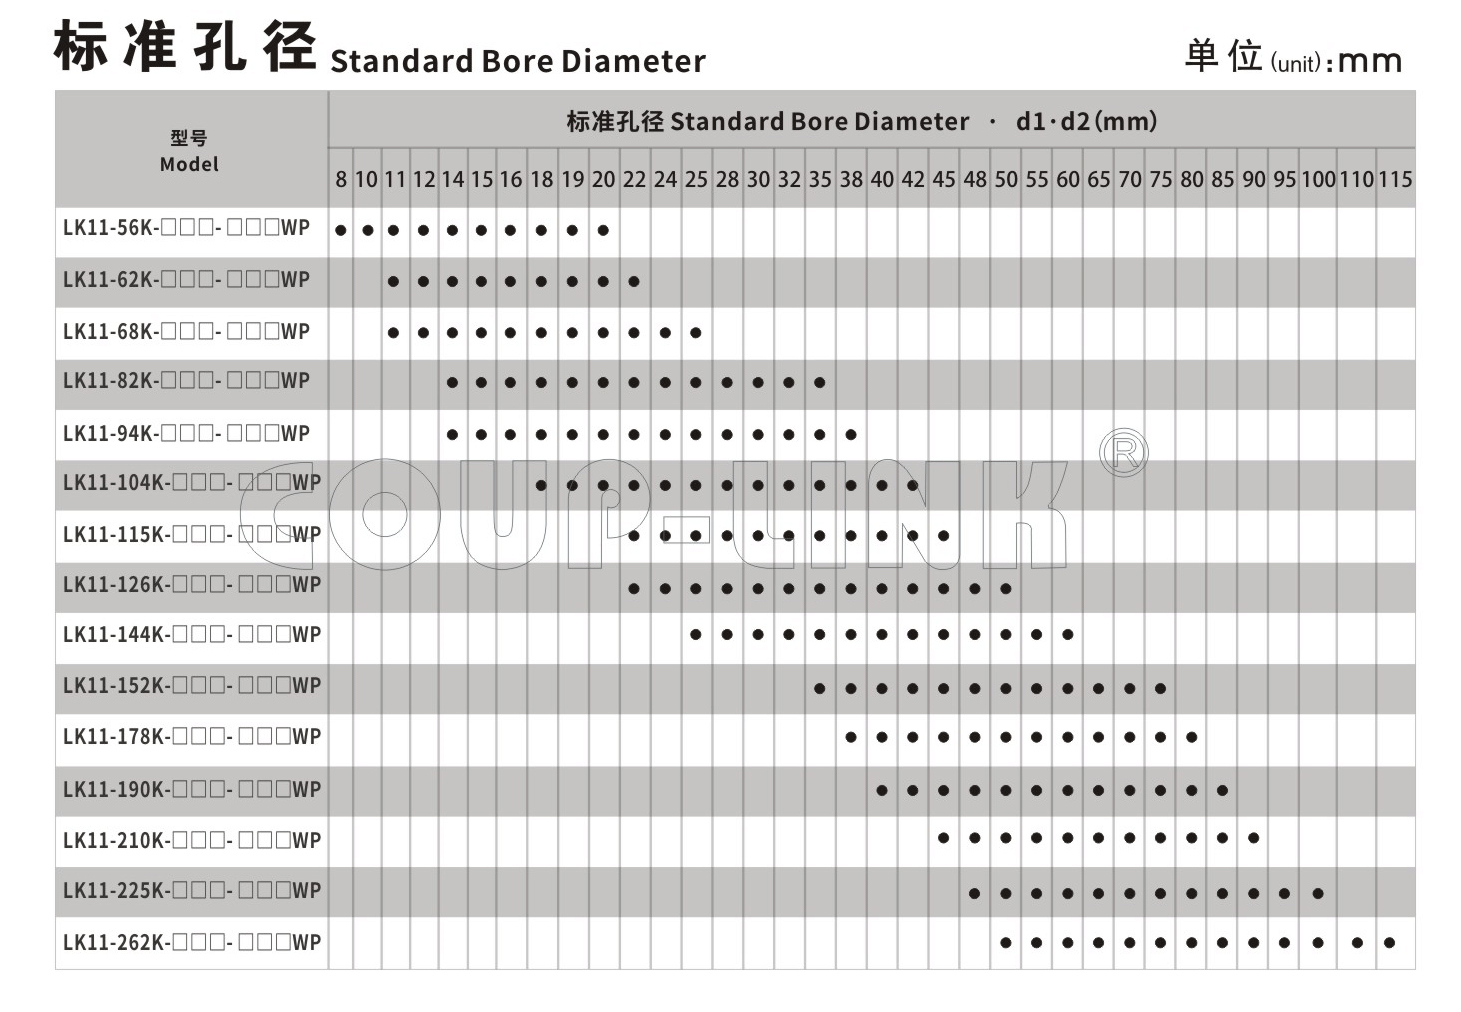 LK11系列 多节键槽联接膜片联轴器_联轴器种类-广州菱科自动化设备有限公司